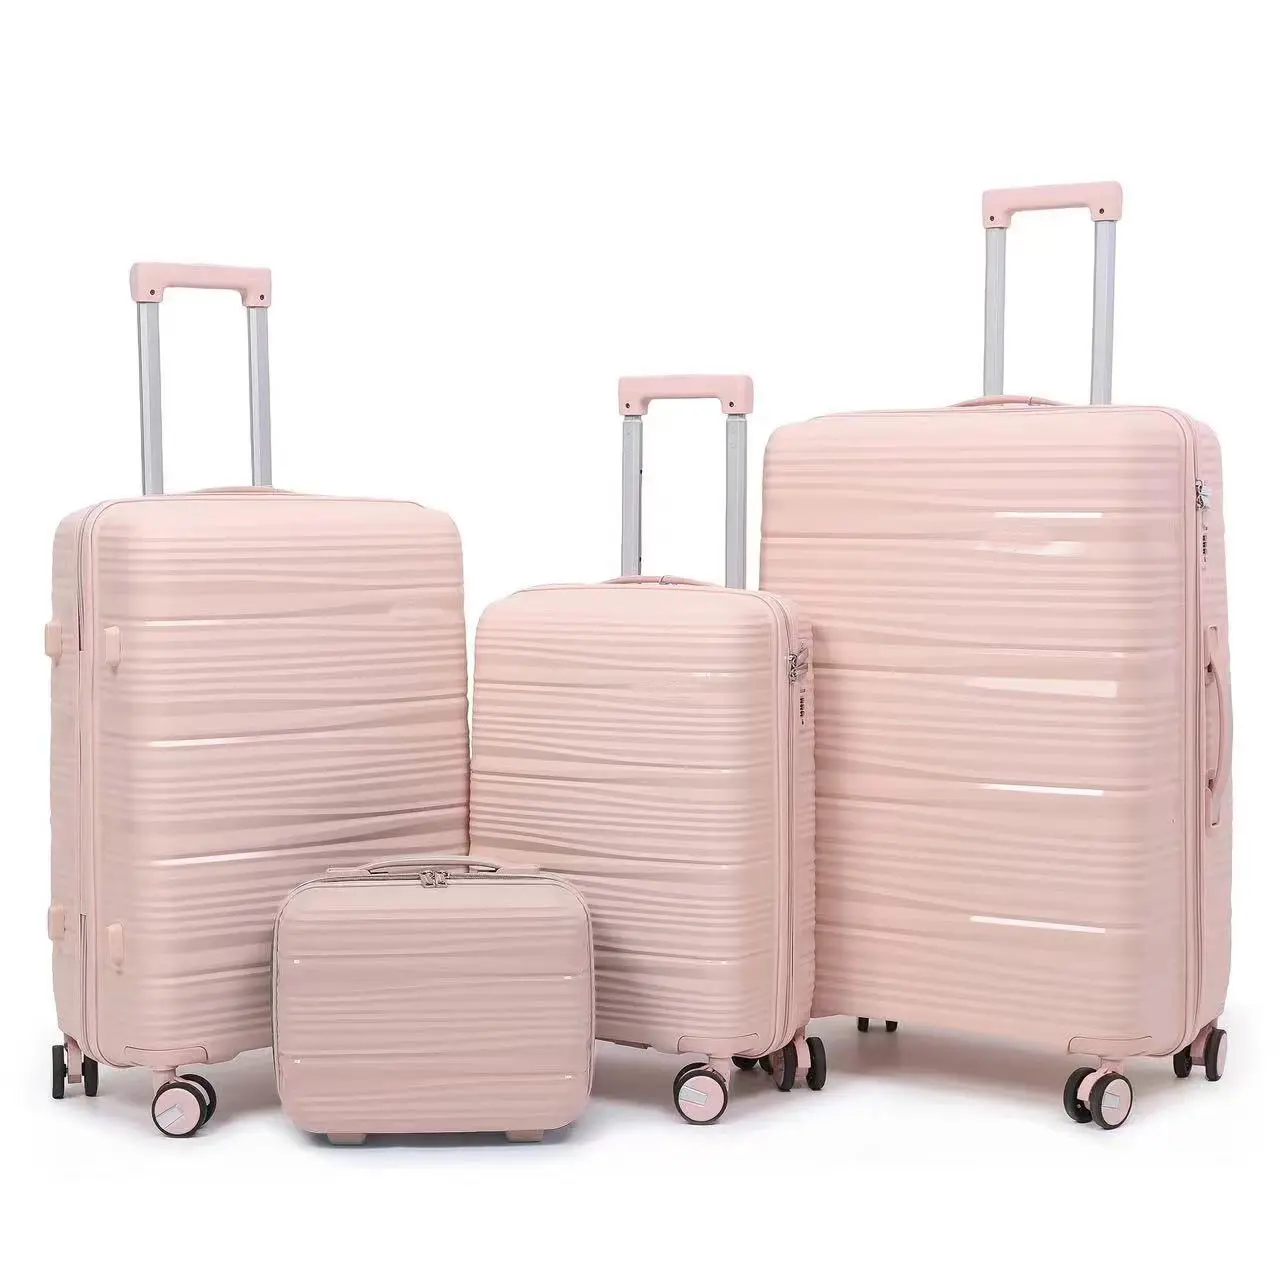 4 комплекта, дорожный Багаж с устойчивым к царапинам полипропиленовым материалом, деловой багажный набор для мужчин и женщин, суперлегкая сумка